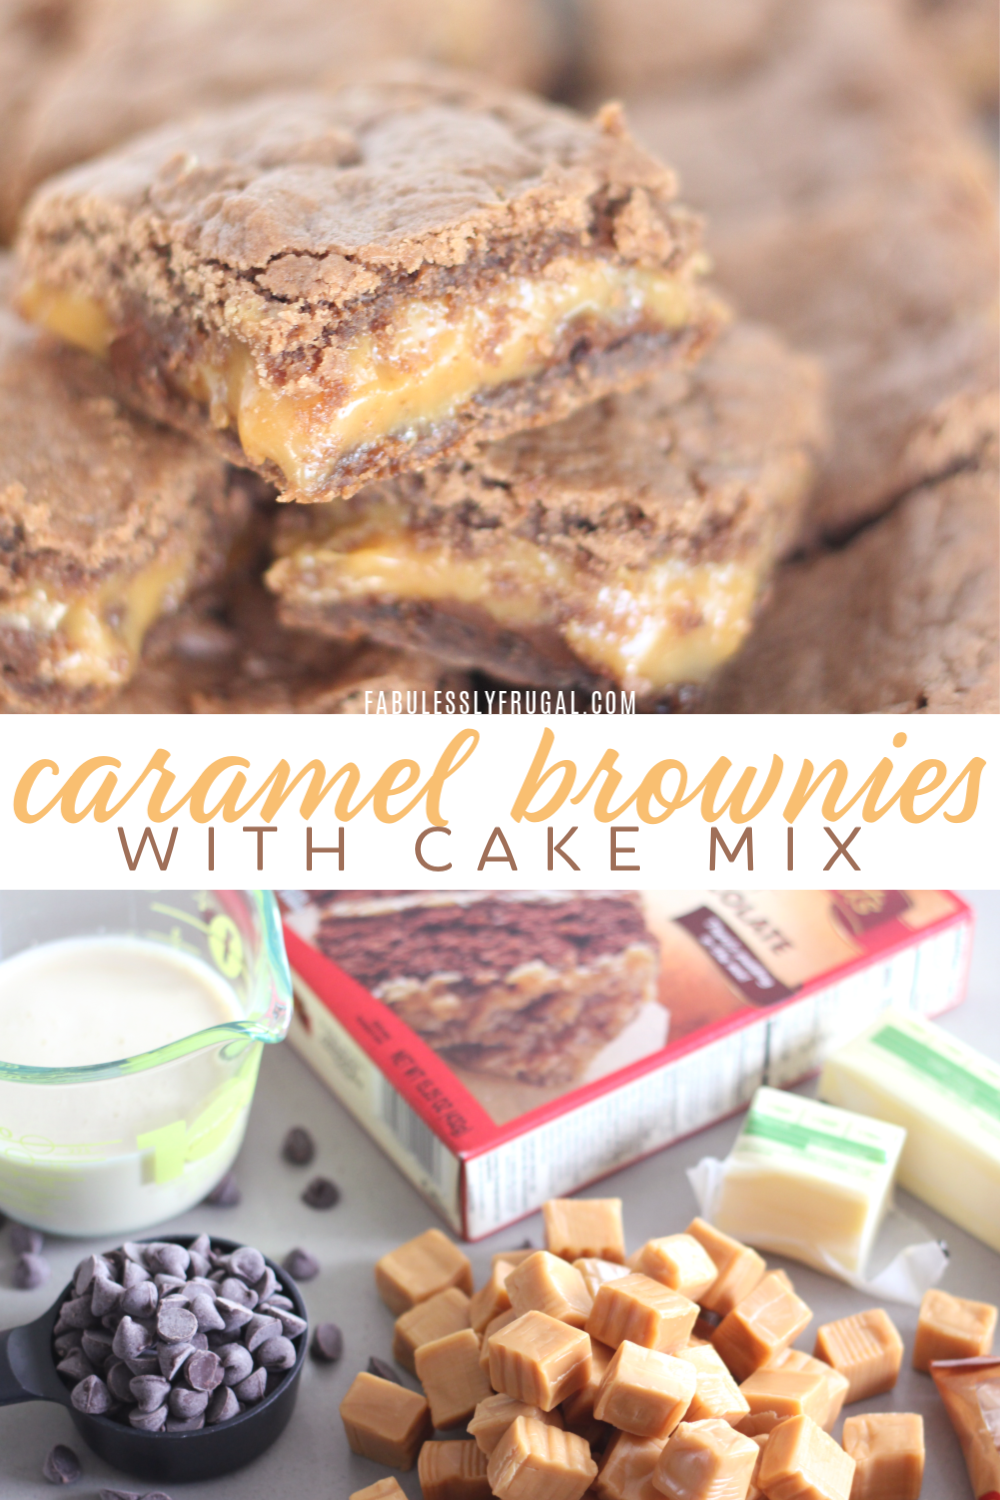 Caramel brownies with cake mix